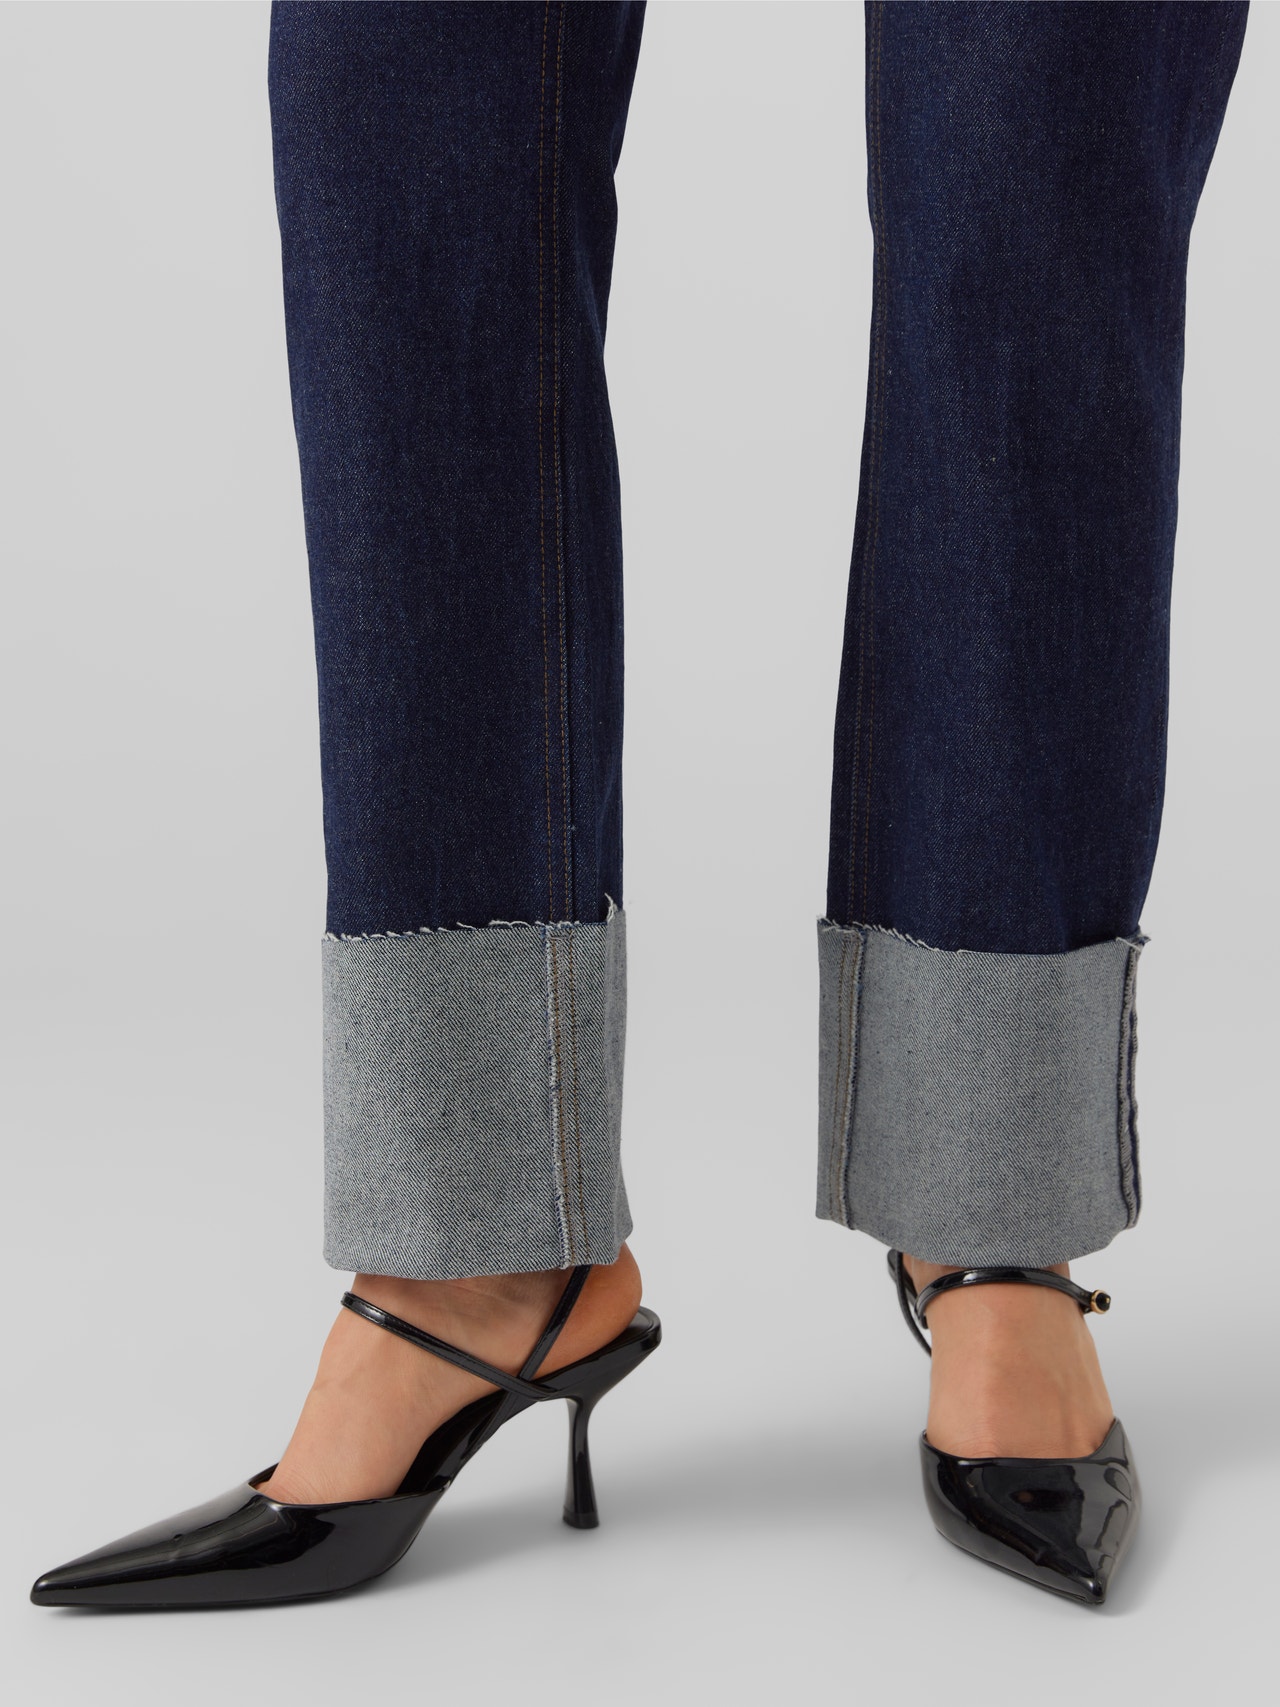 Vero Moda VMDREW Rak passform Jeans -Dark Blue Denim - 10272321